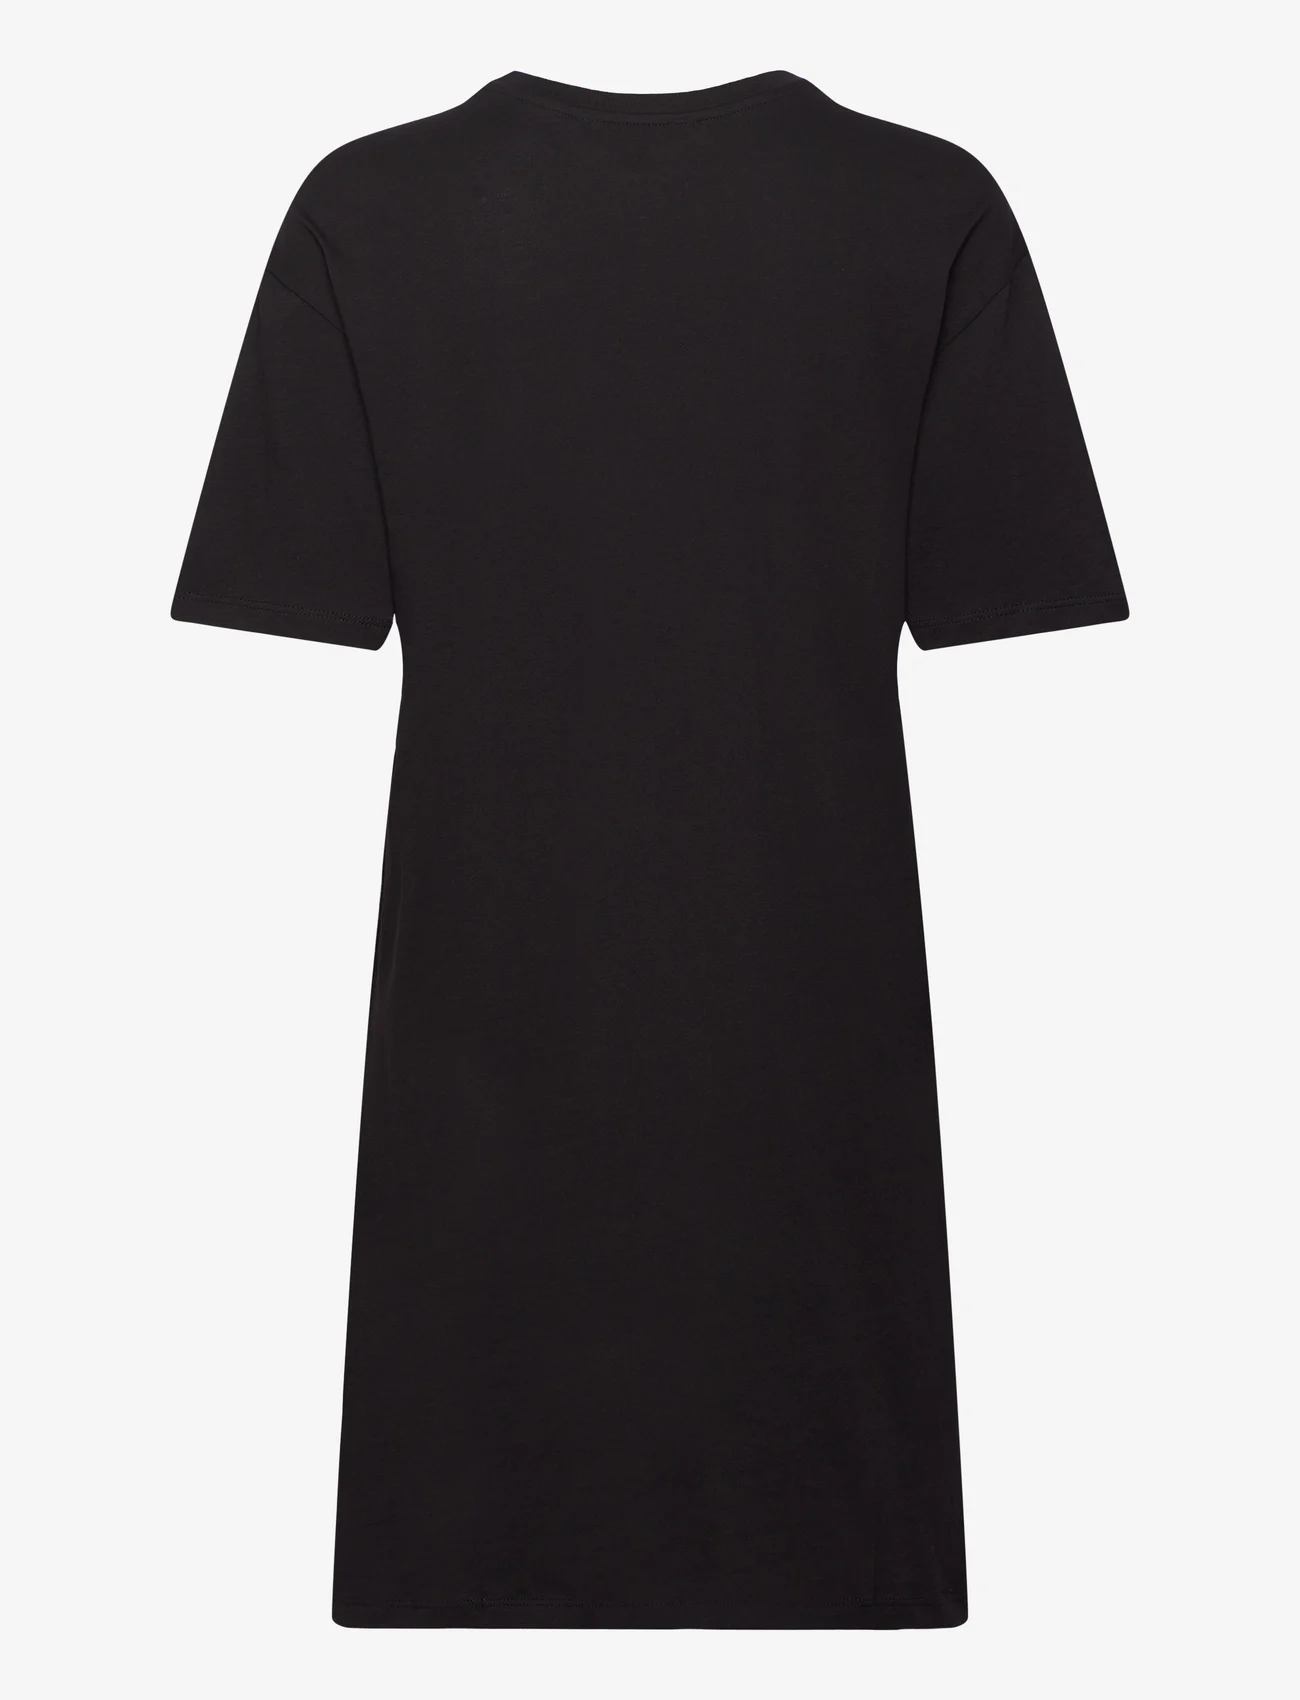 Armani Exchange - DRESS - t-shirtkjoler - 1200-black - 1